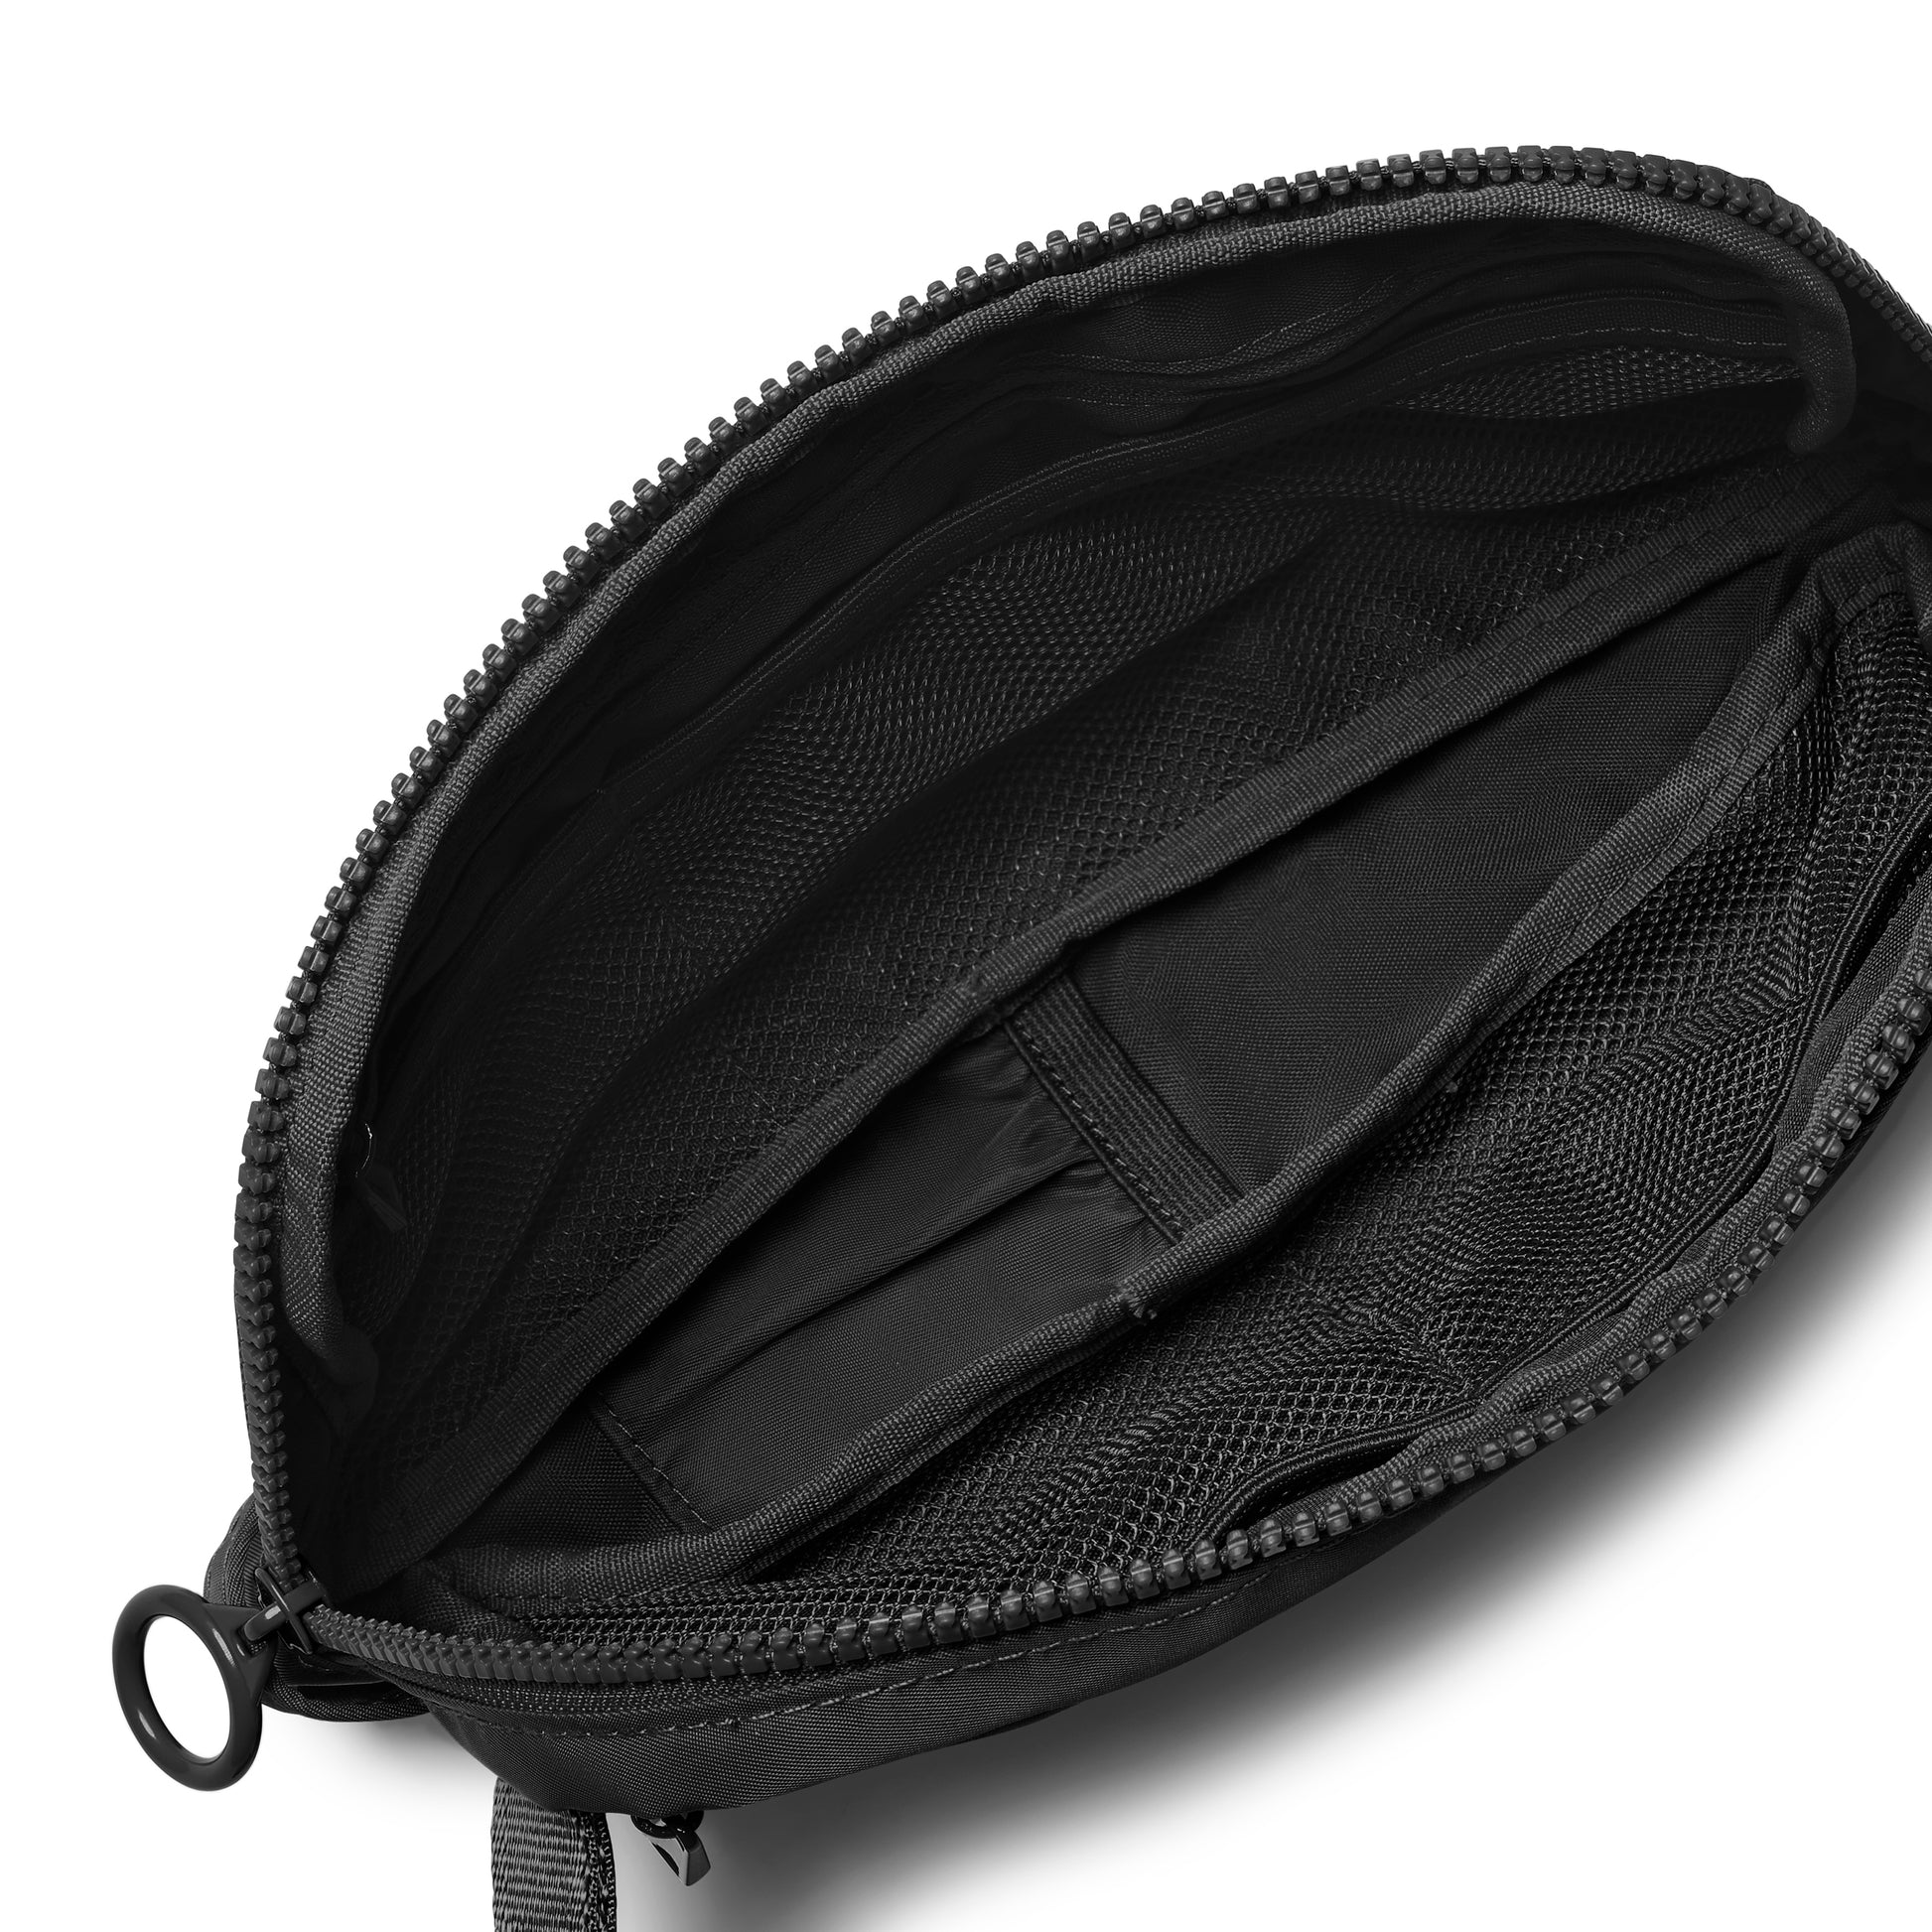 Black nurse bag with pocket for scissors 